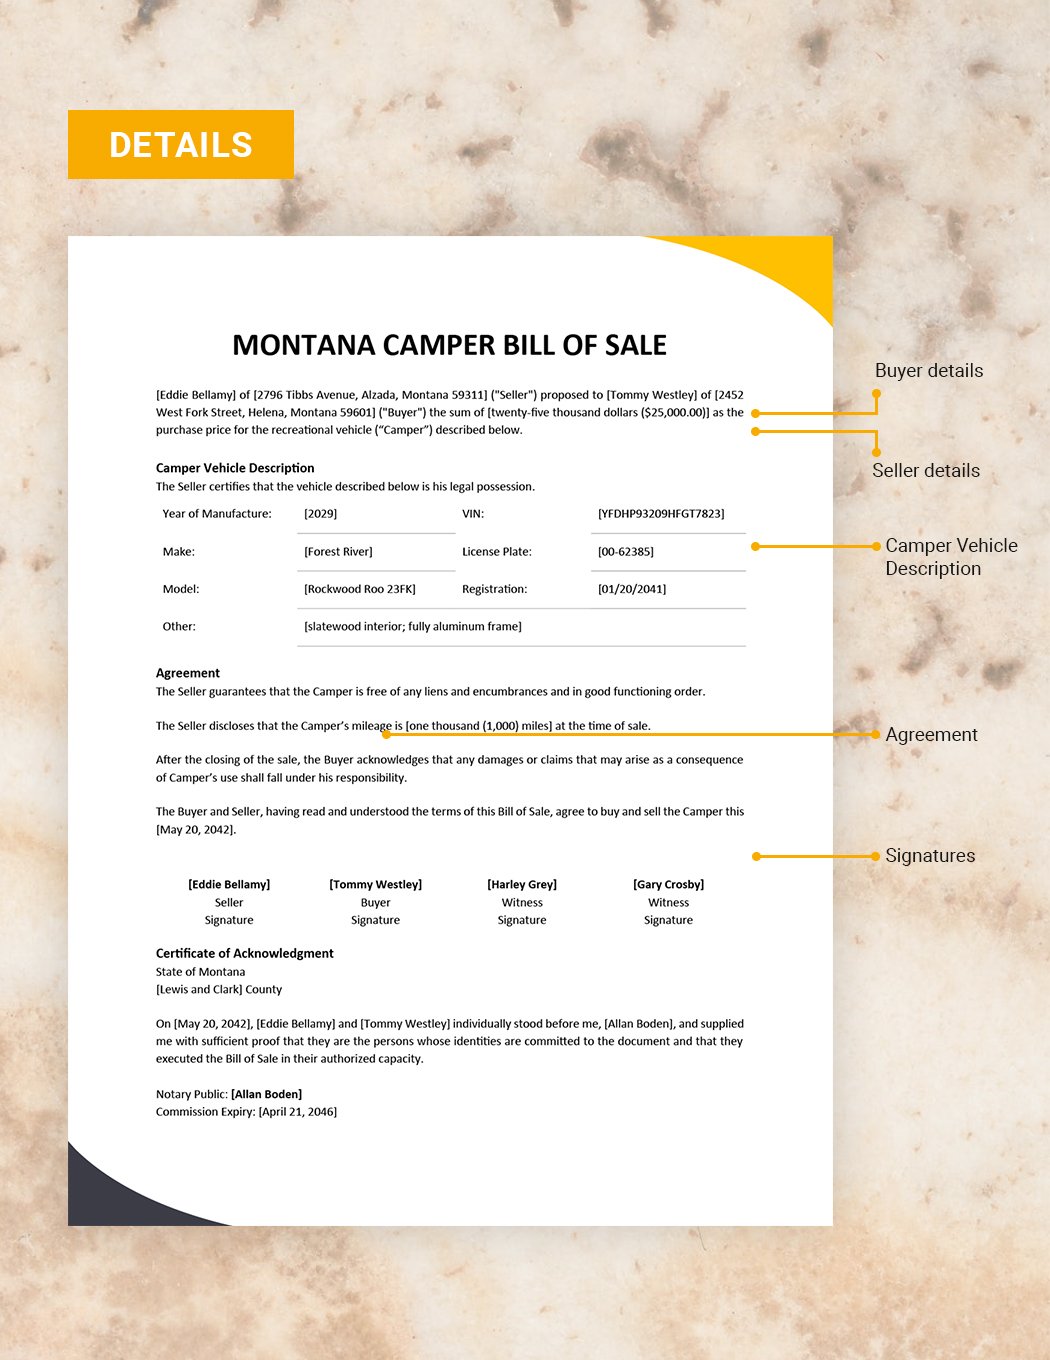 Montana Camper Bill of Sale Template